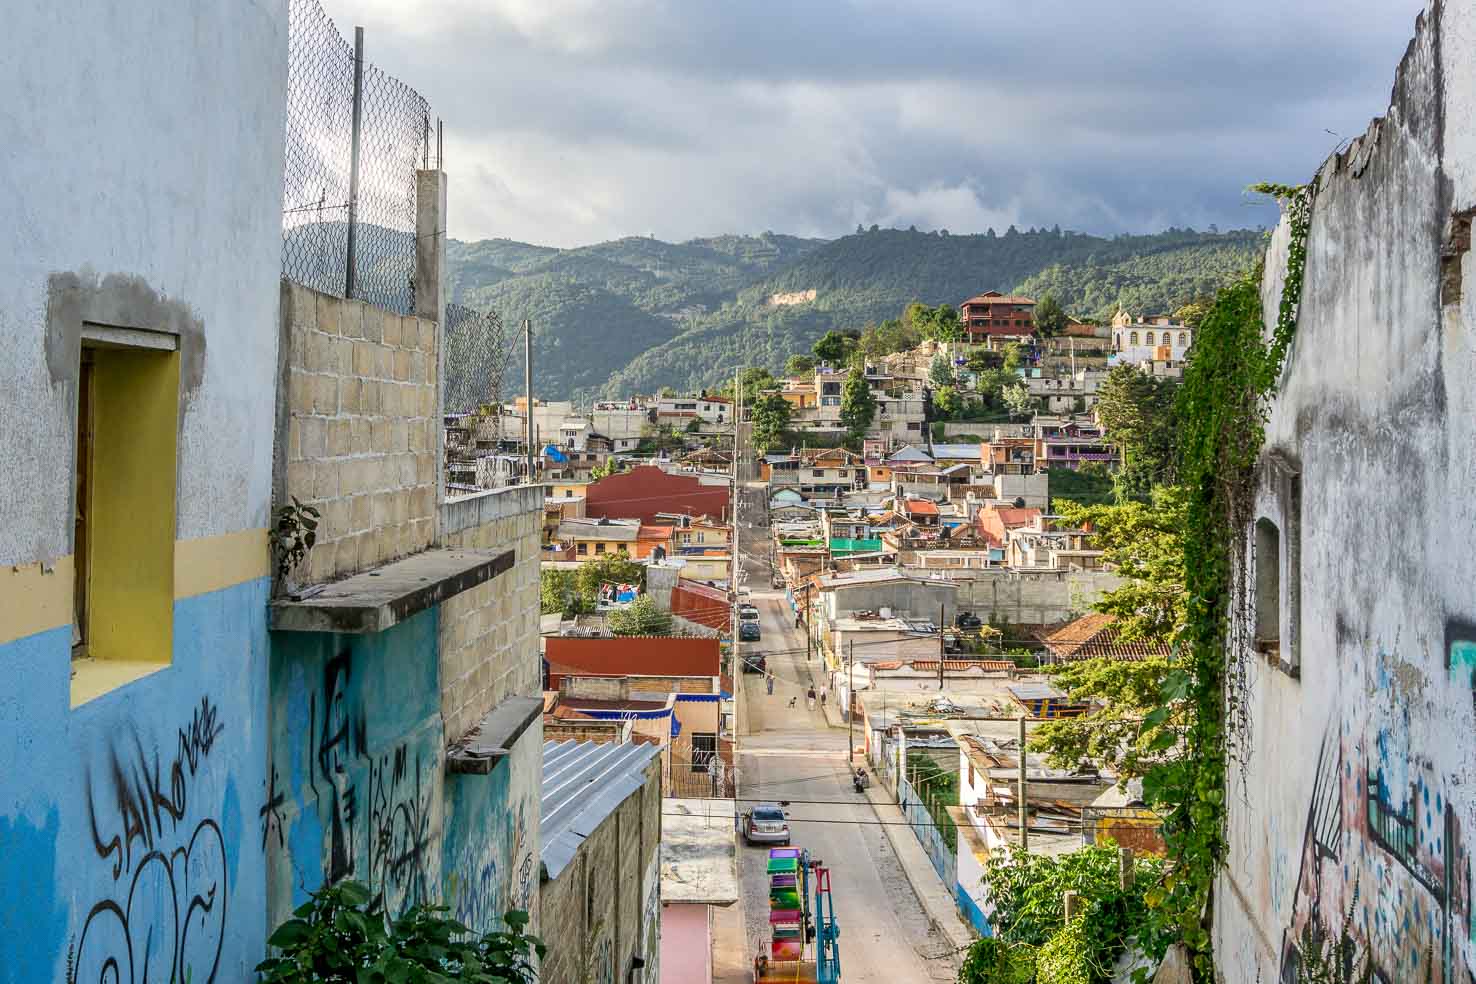 Streets of San Cristobal de las Casas, Mexico